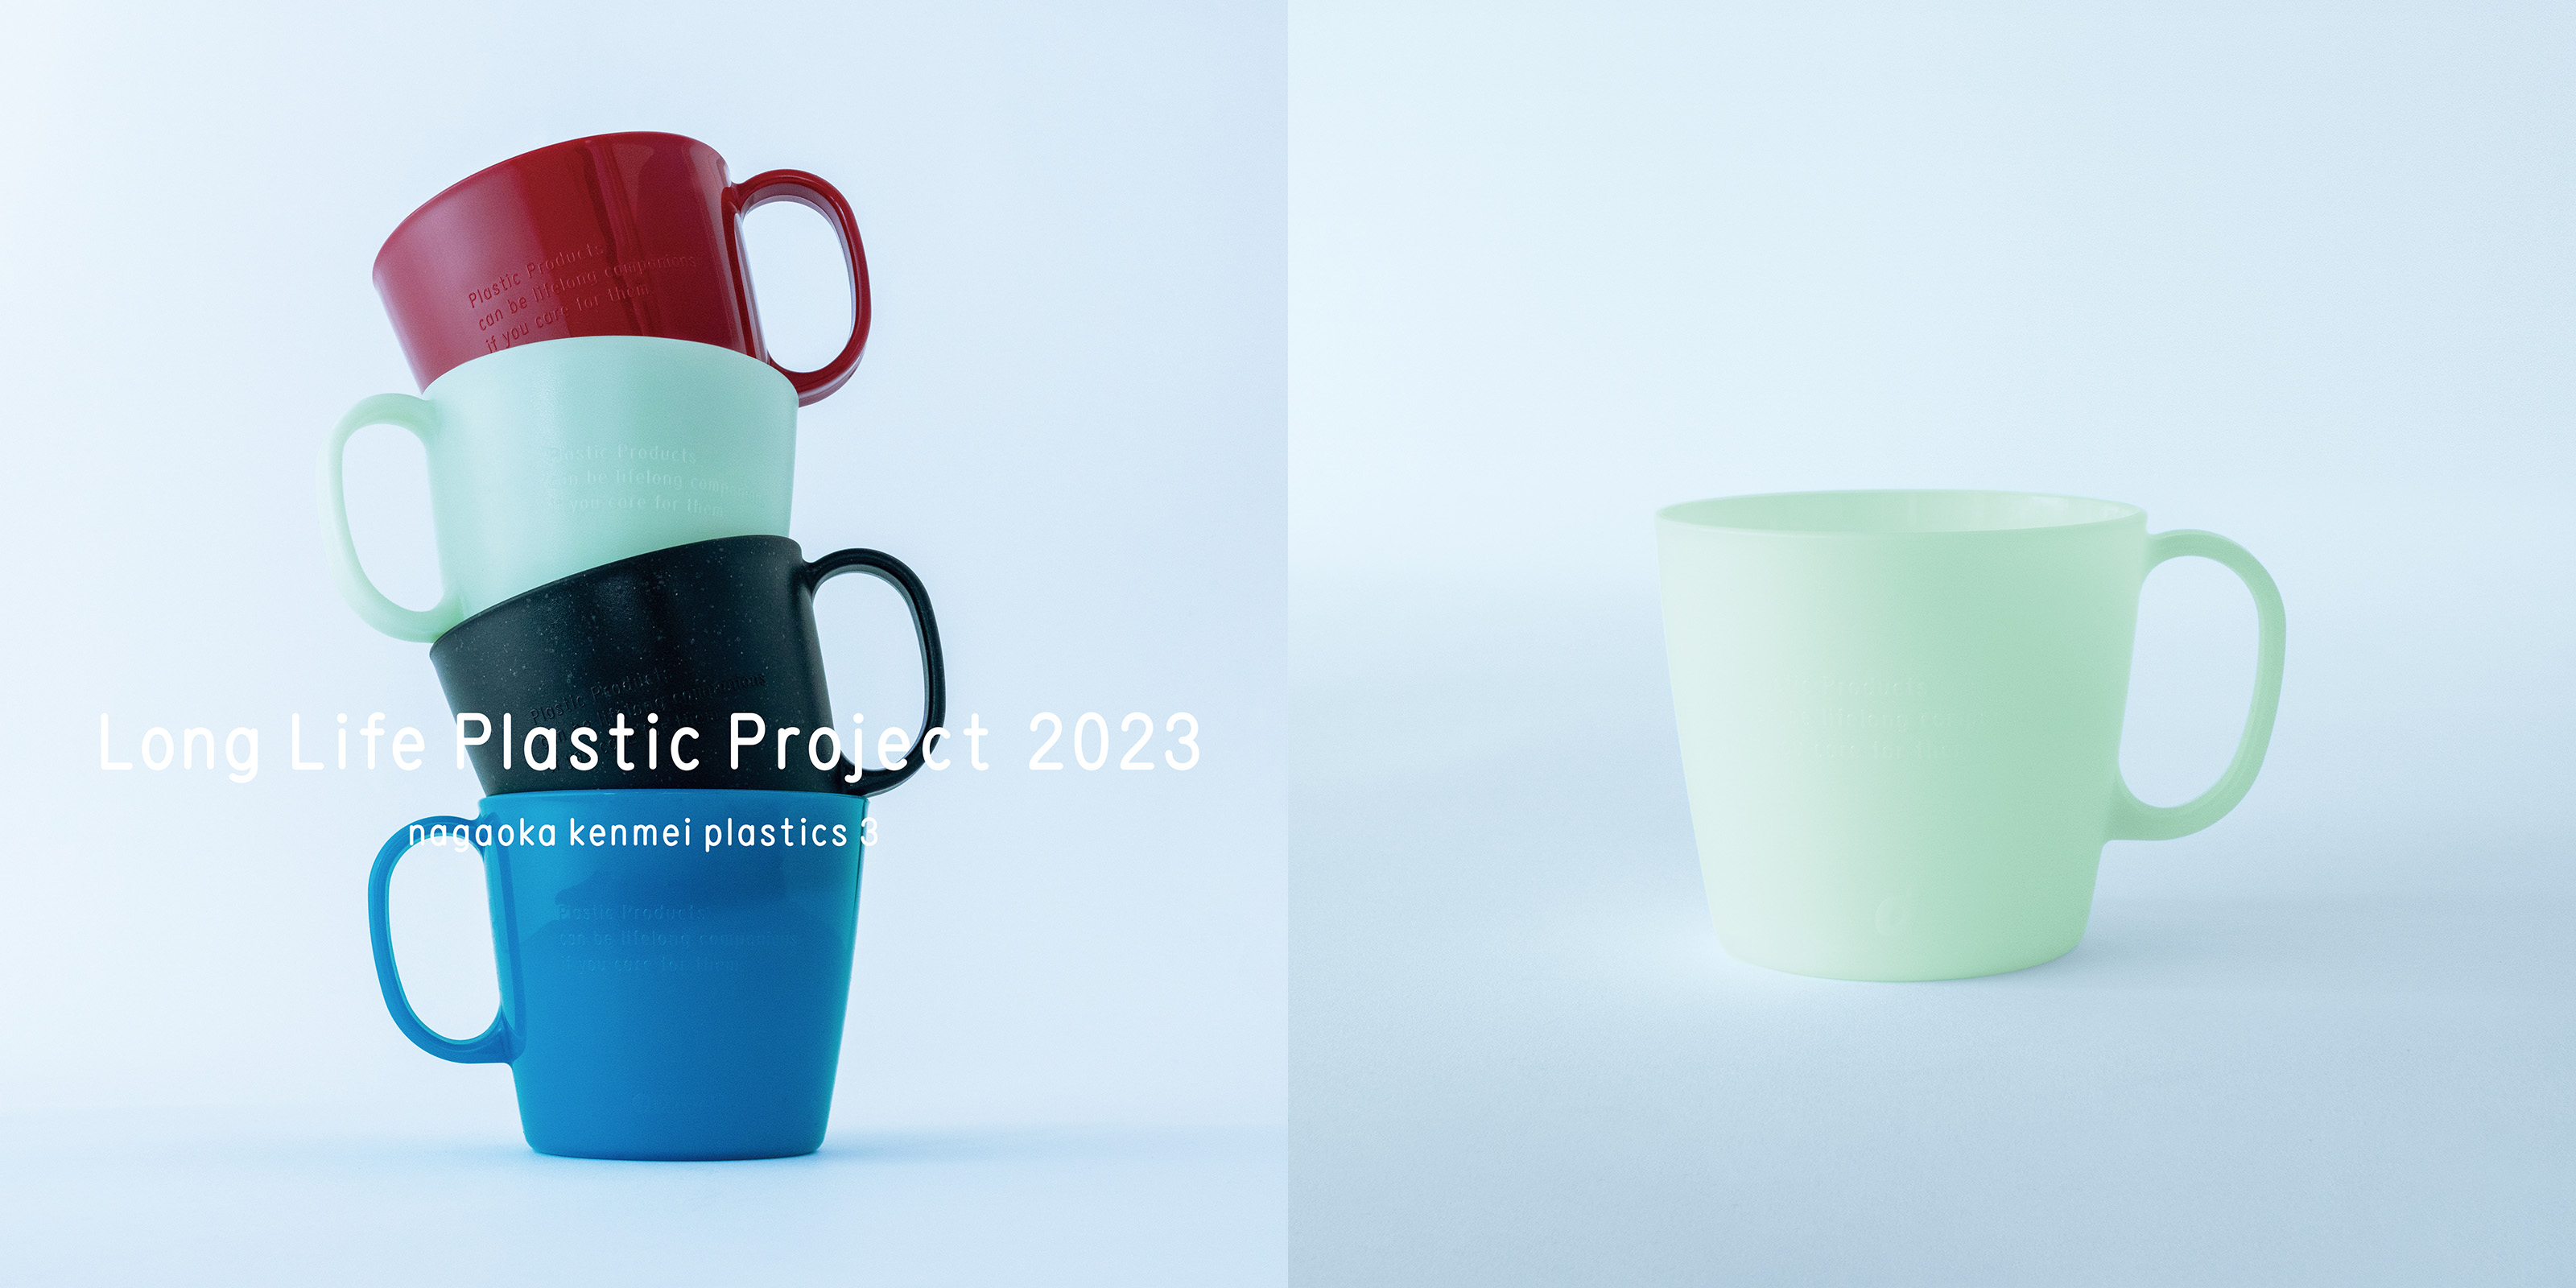 Long Life Plastic Project 2023 プラスチックマグカップ・ピースグリーン